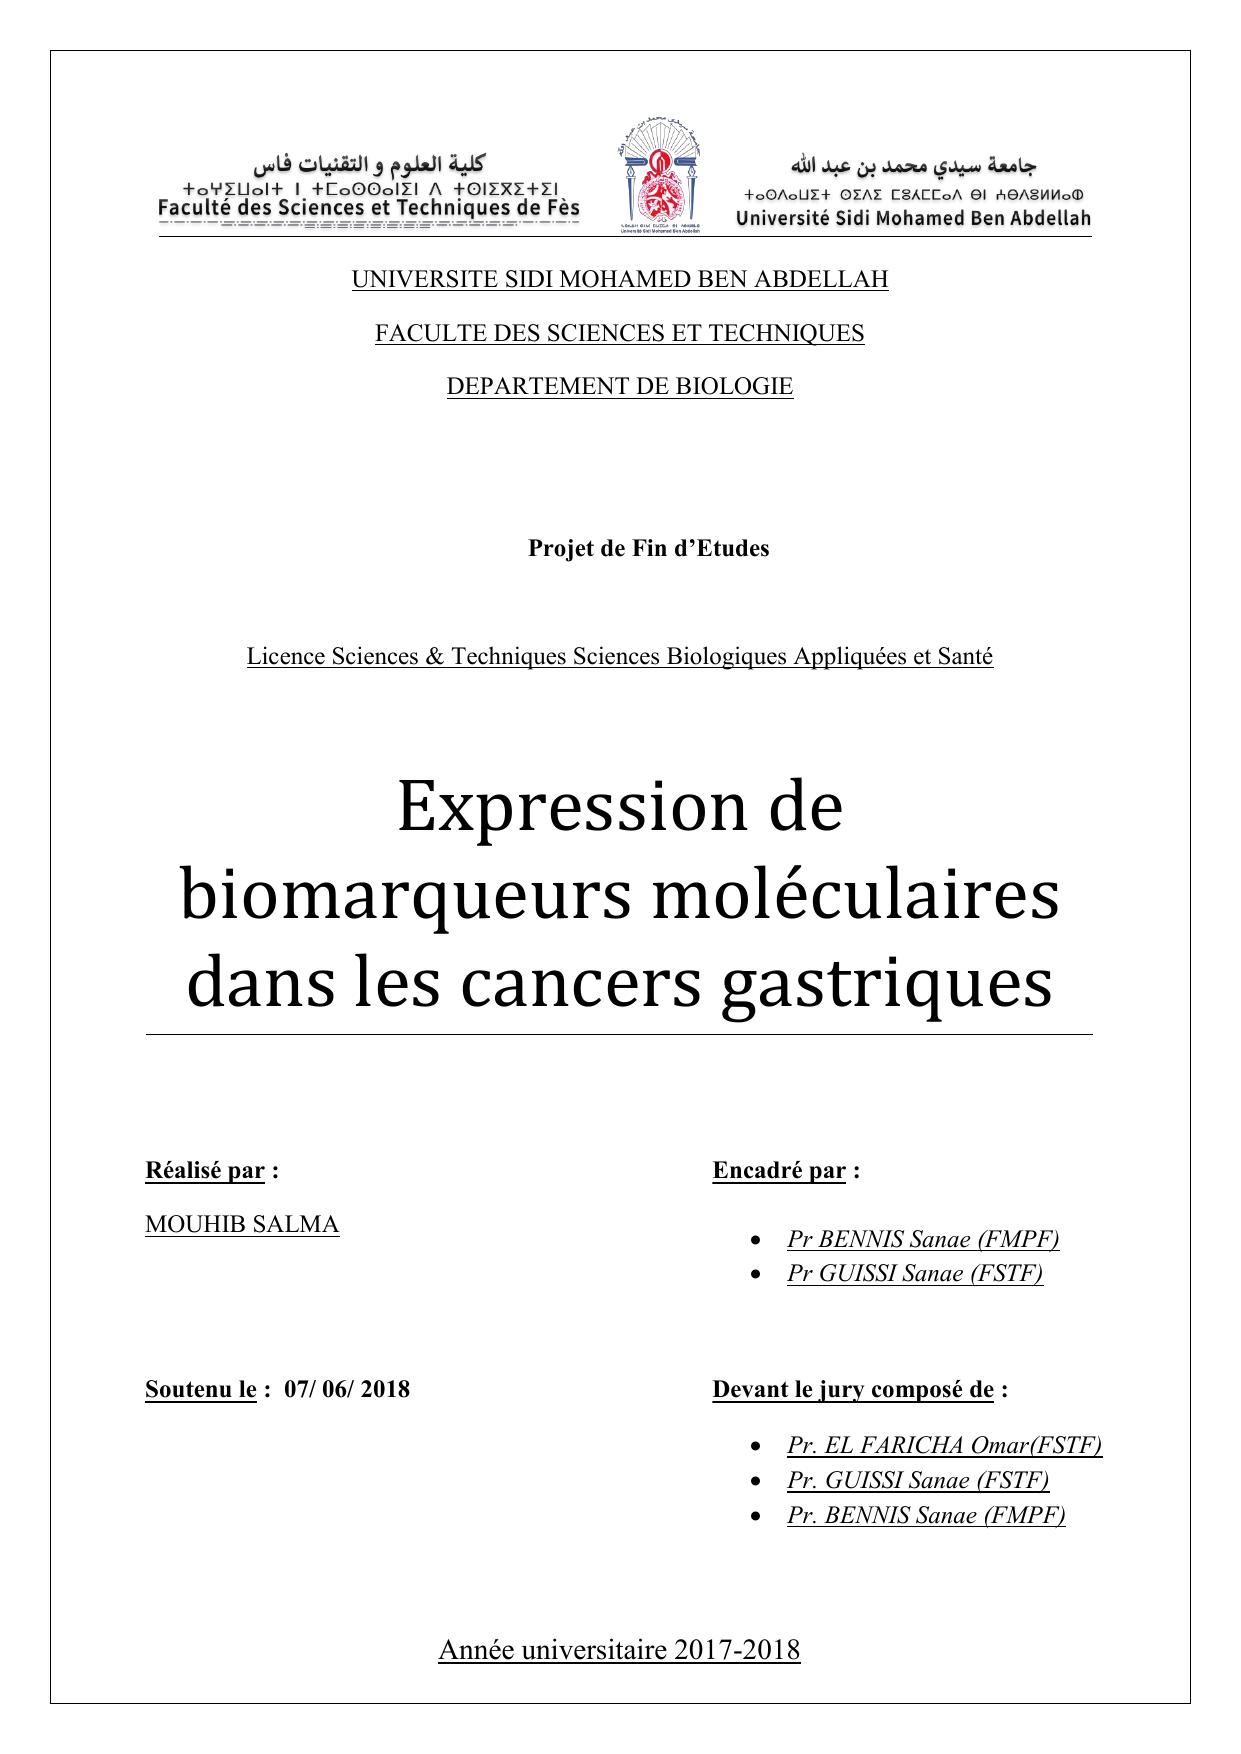 Expression de biomarqueurs moléculaires dans les cancers gastriques